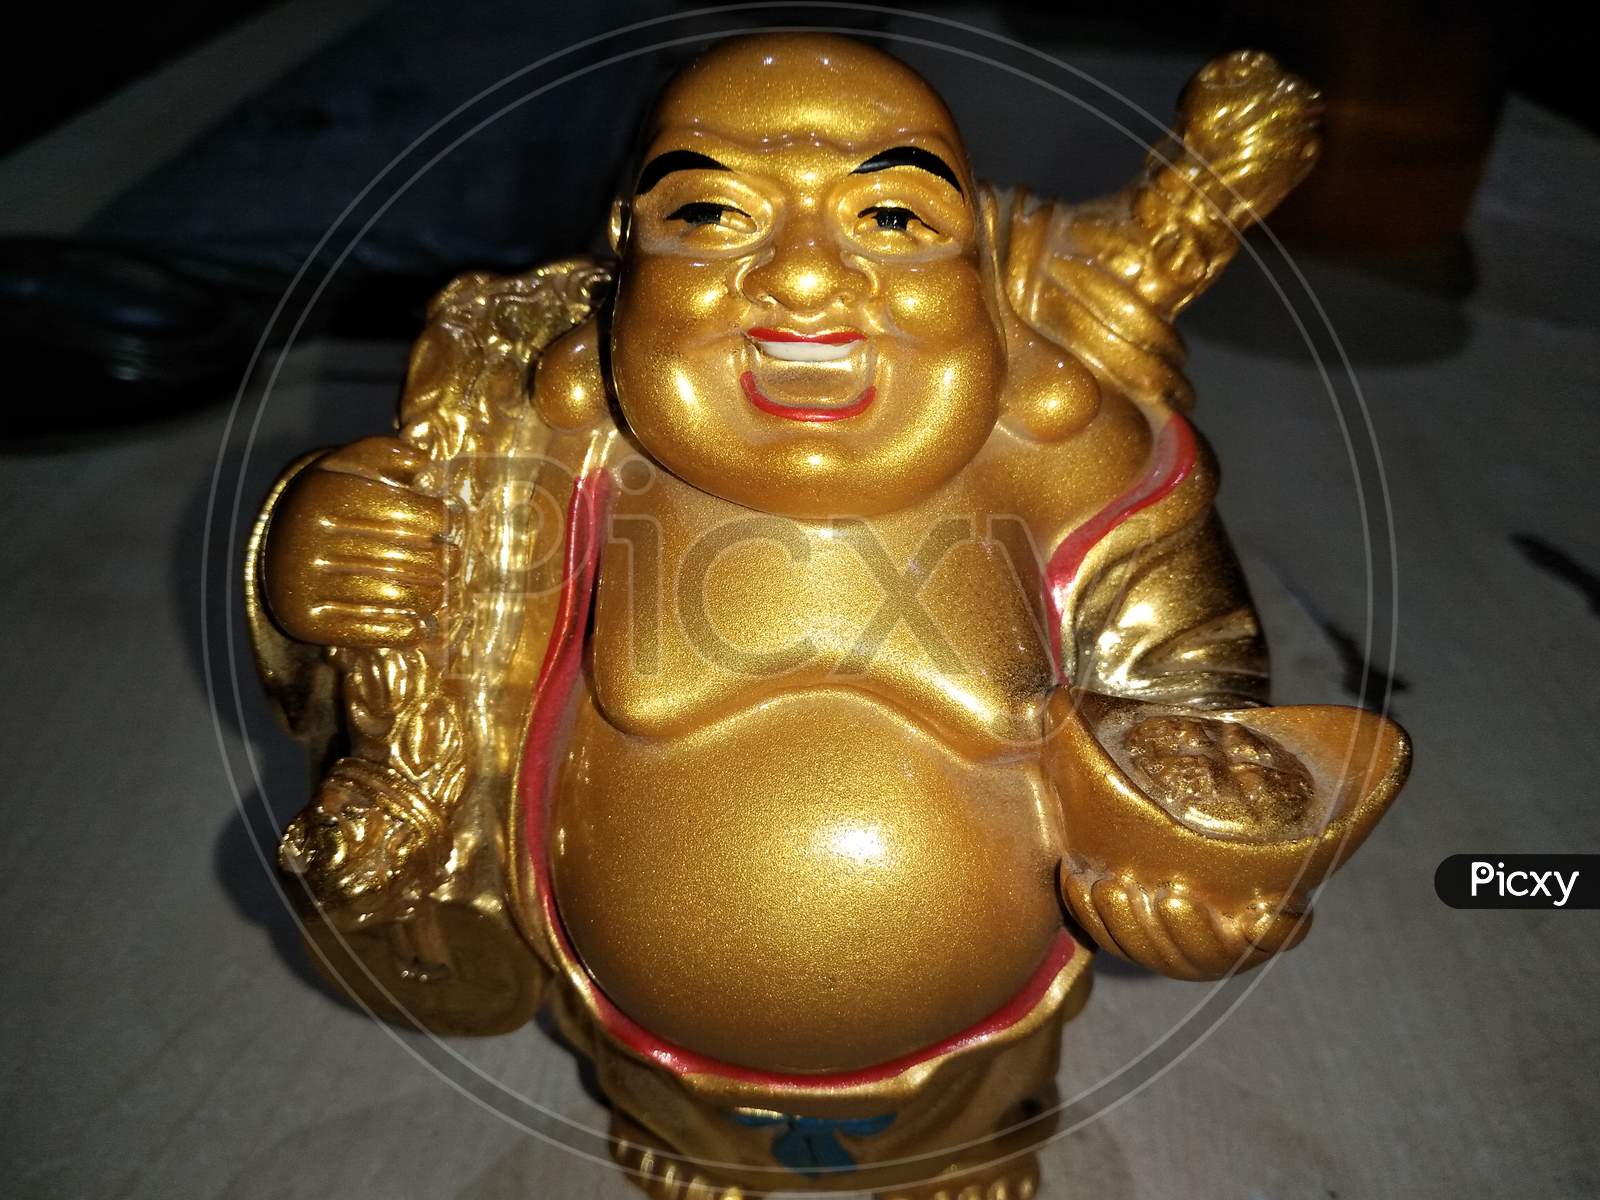 Laughing Buddha Idol Closeup